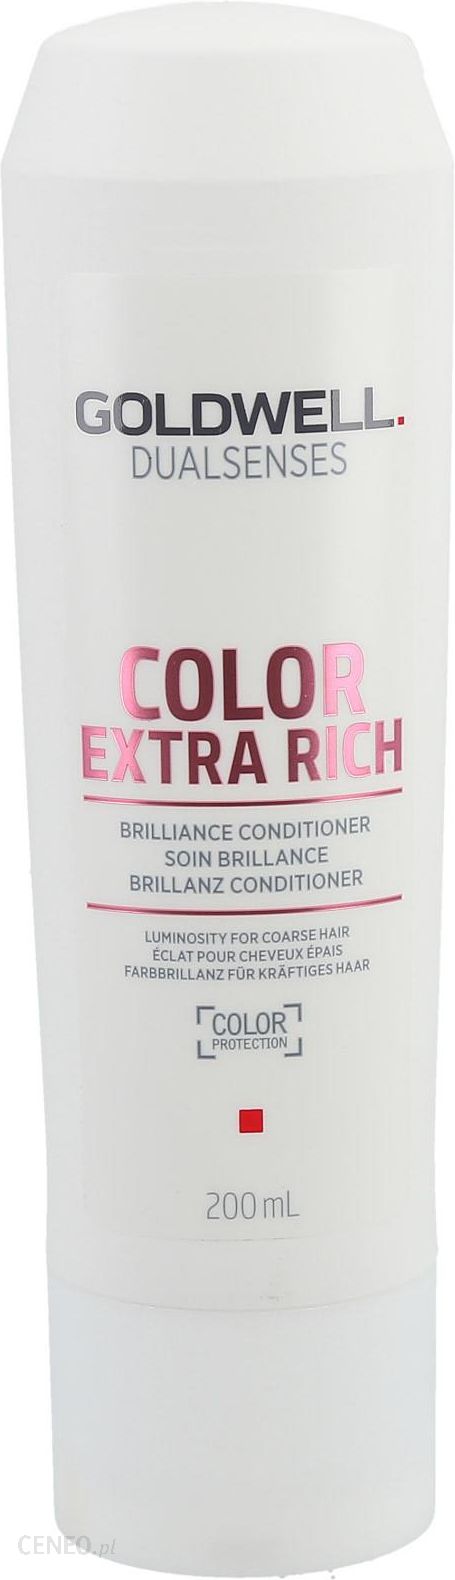 goldwell szampon do włosów farbowanych opinie